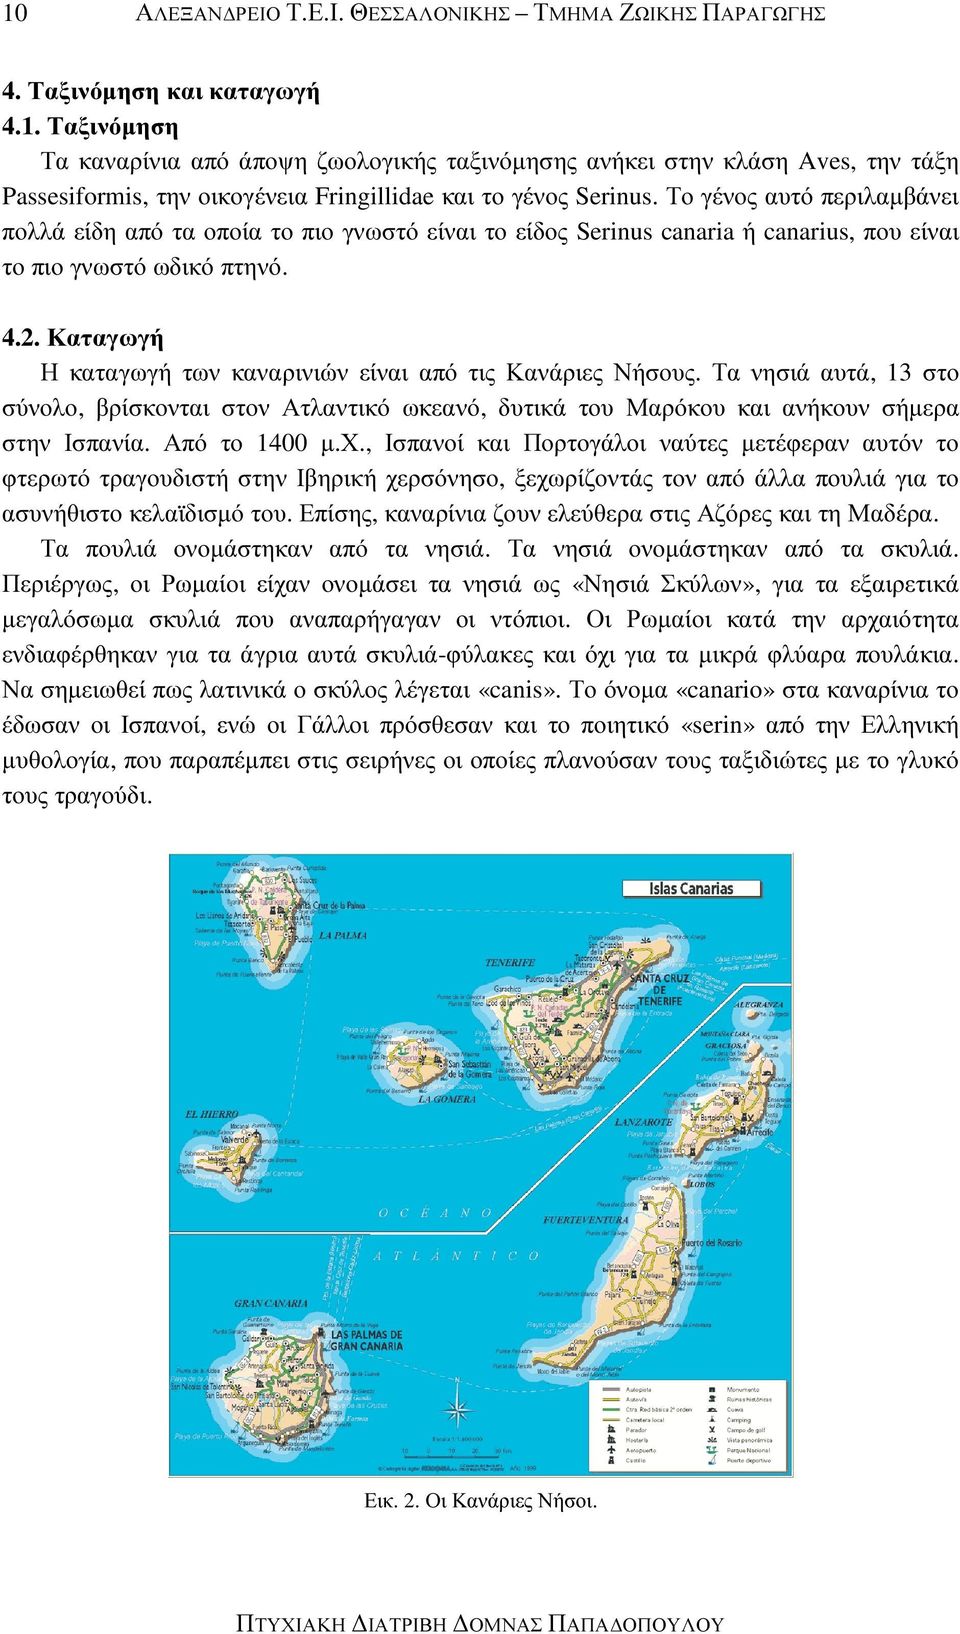 Καταγωγή Η καταγωγή των καναρινιών είναι από τις Κανάριες Νήσους. Τα νησιά αυτά, 13 στο σύνολο, βρίσκονται στον Ατλαντικό ωκεανό, δυτικά του Μαρόκου και ανήκουν σήµερα στην Ισπανία. Από το 1400 µ.χ.